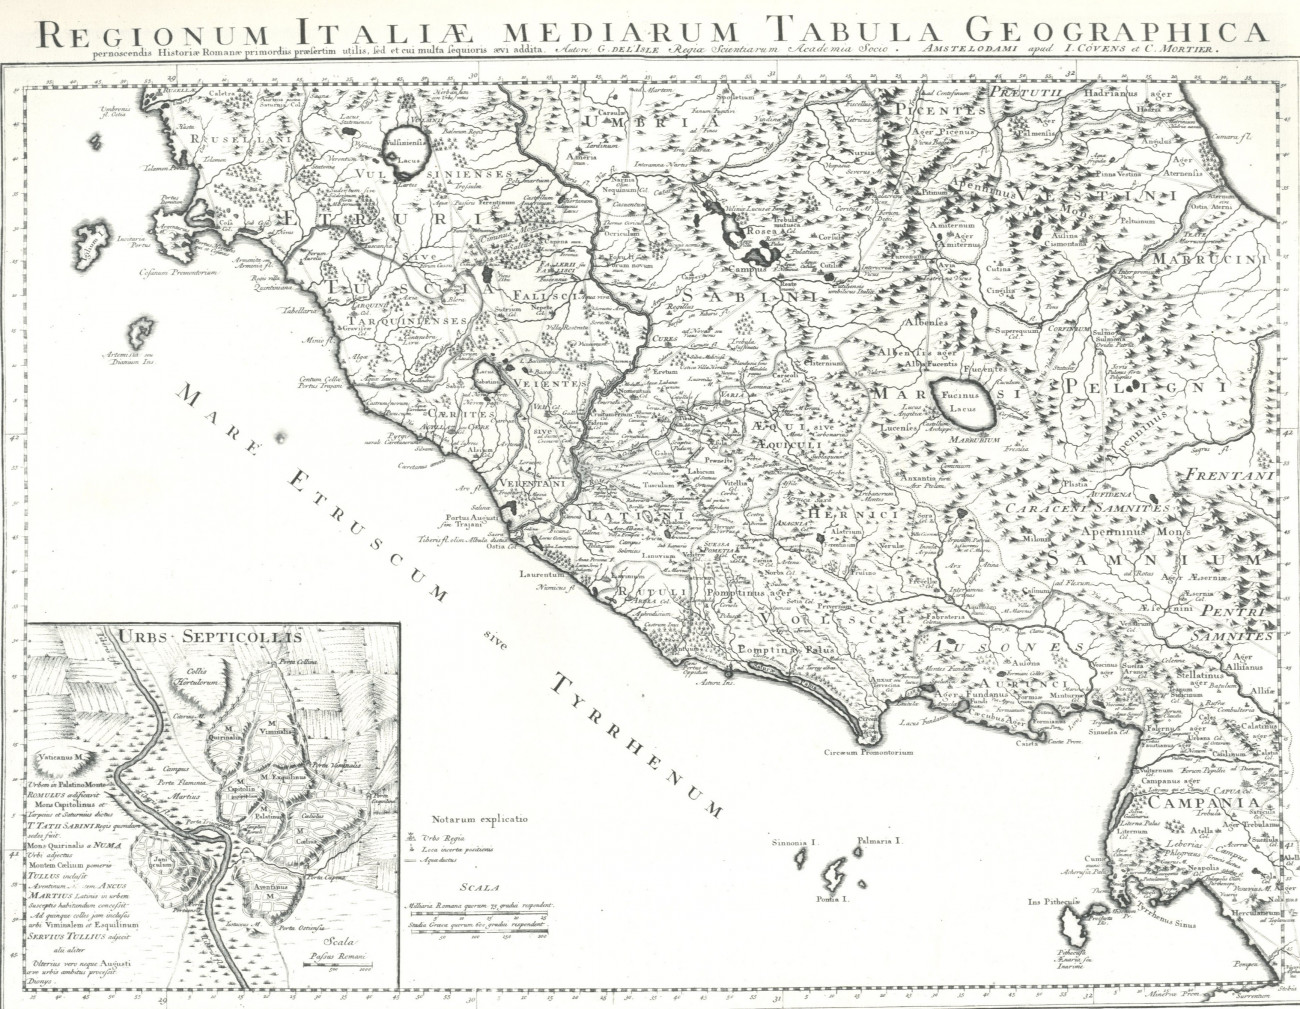 Regionum Italiae 